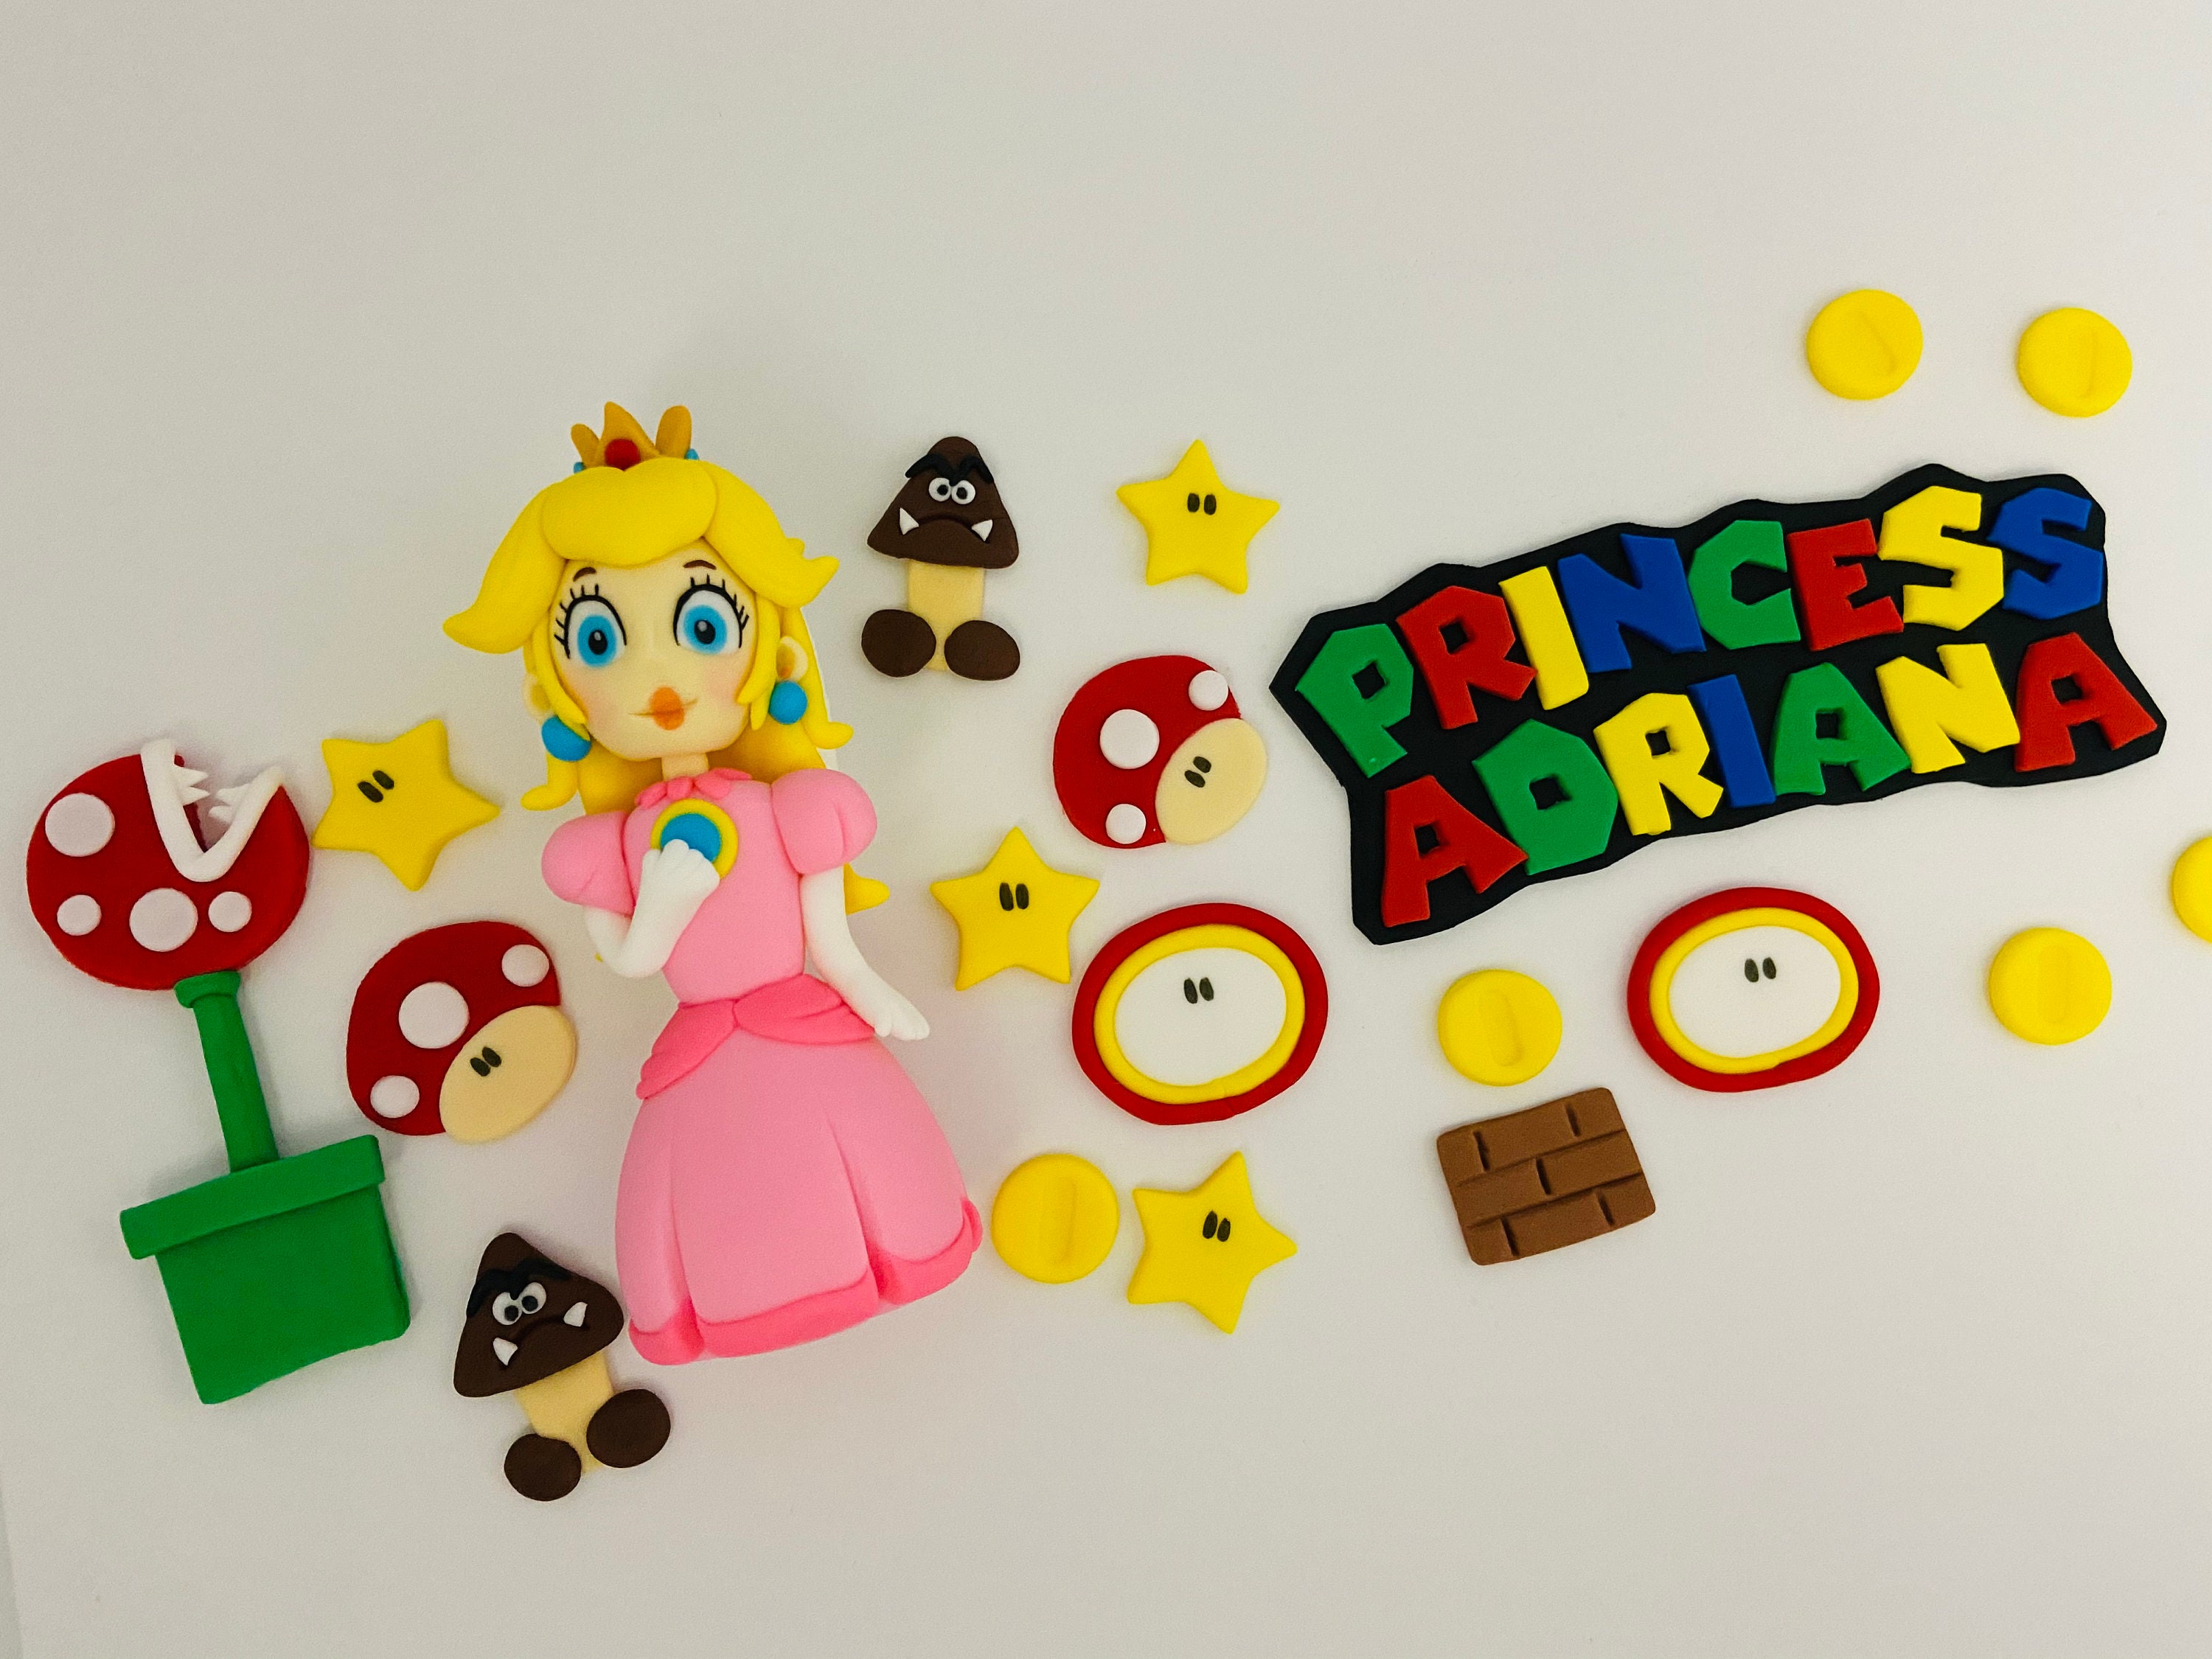 Princess Peach Cake Topper Super Mario Princess Cake Topper 